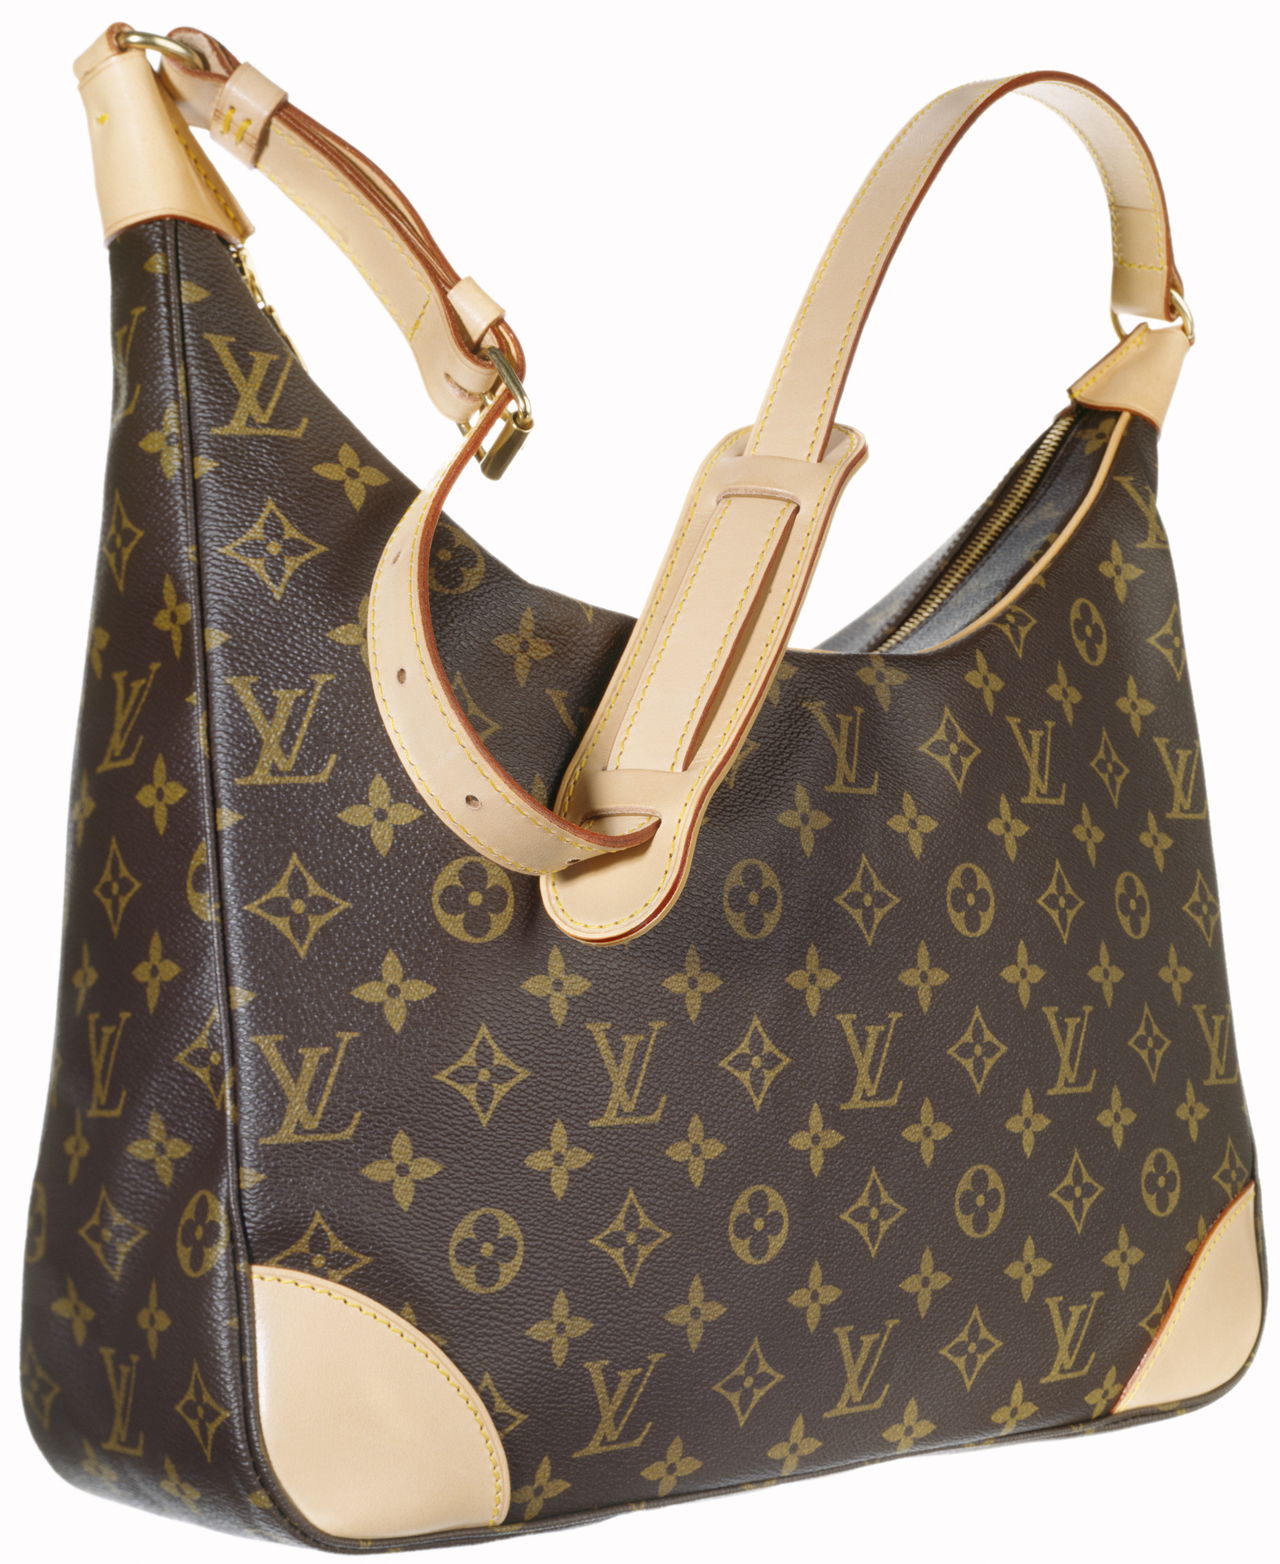 How to Spot a Fake Louis Vuitton Bag - Fashionhance